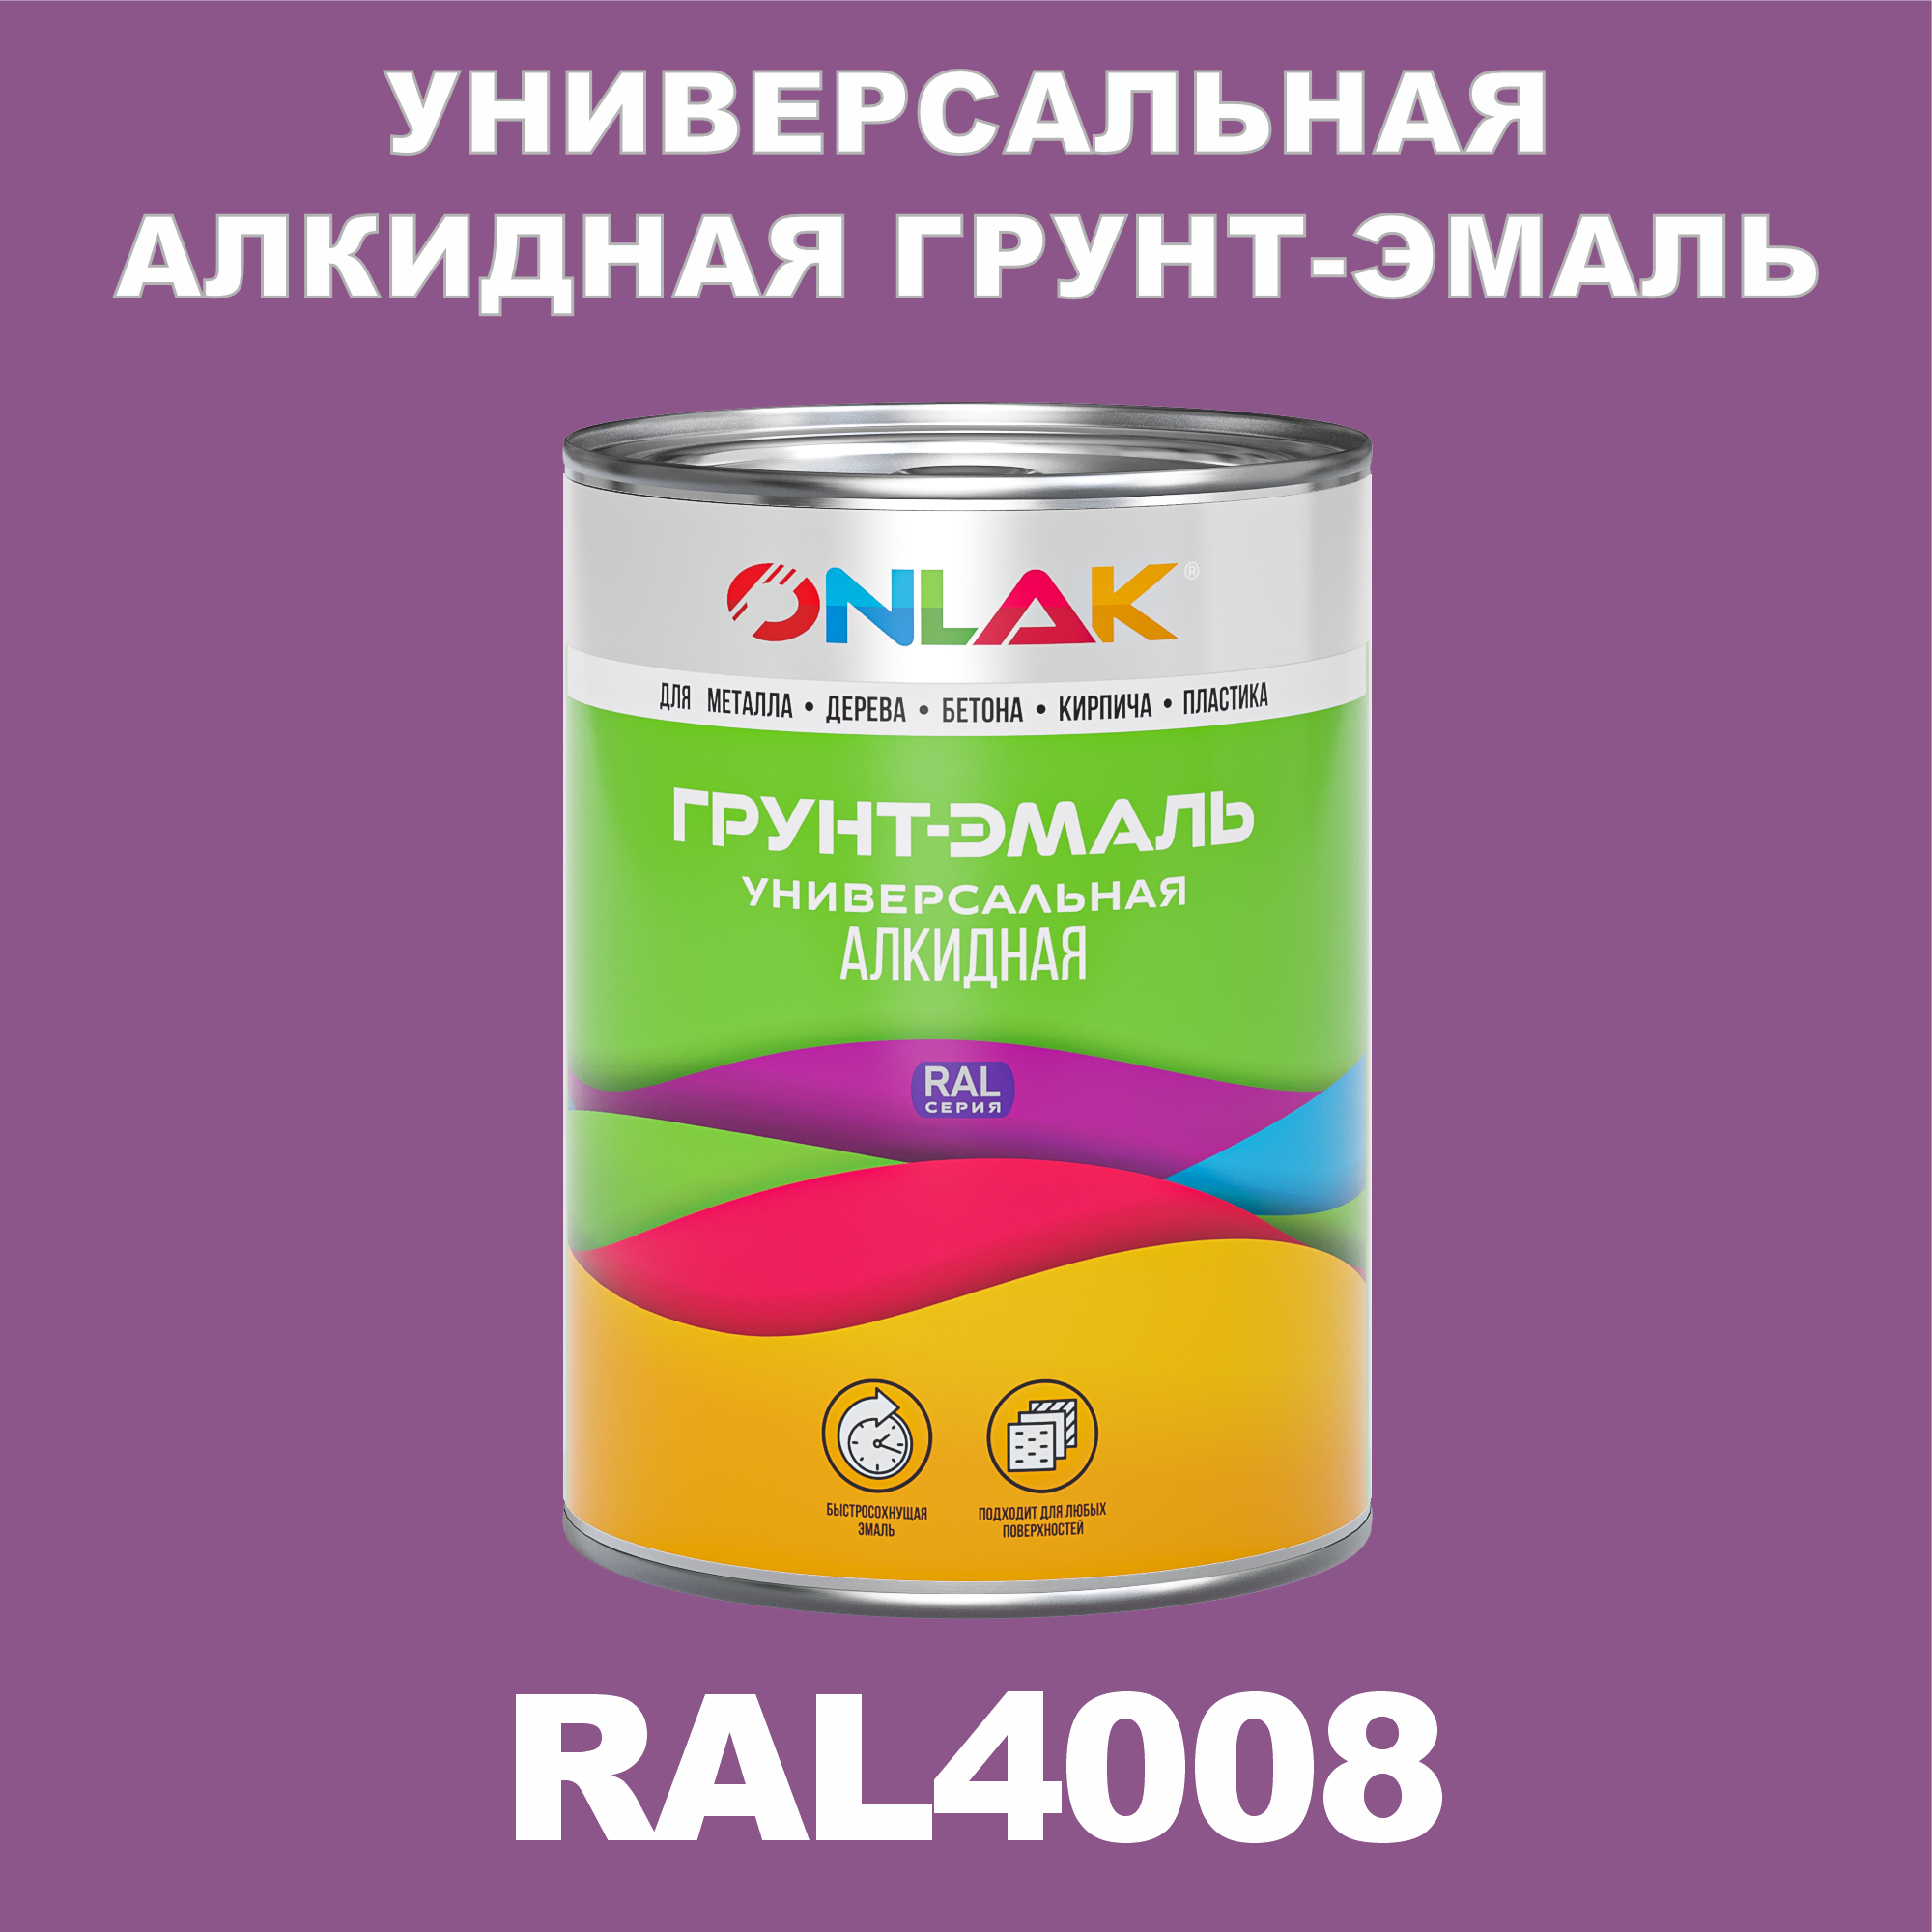 Грунт-эмаль ONLAK 1К RAL4008 антикоррозионная алкидная по металлу по ржавчине 1 кг антикоррозионная грунт эмаль onlak ral 4007 фиолетовый 572 мл